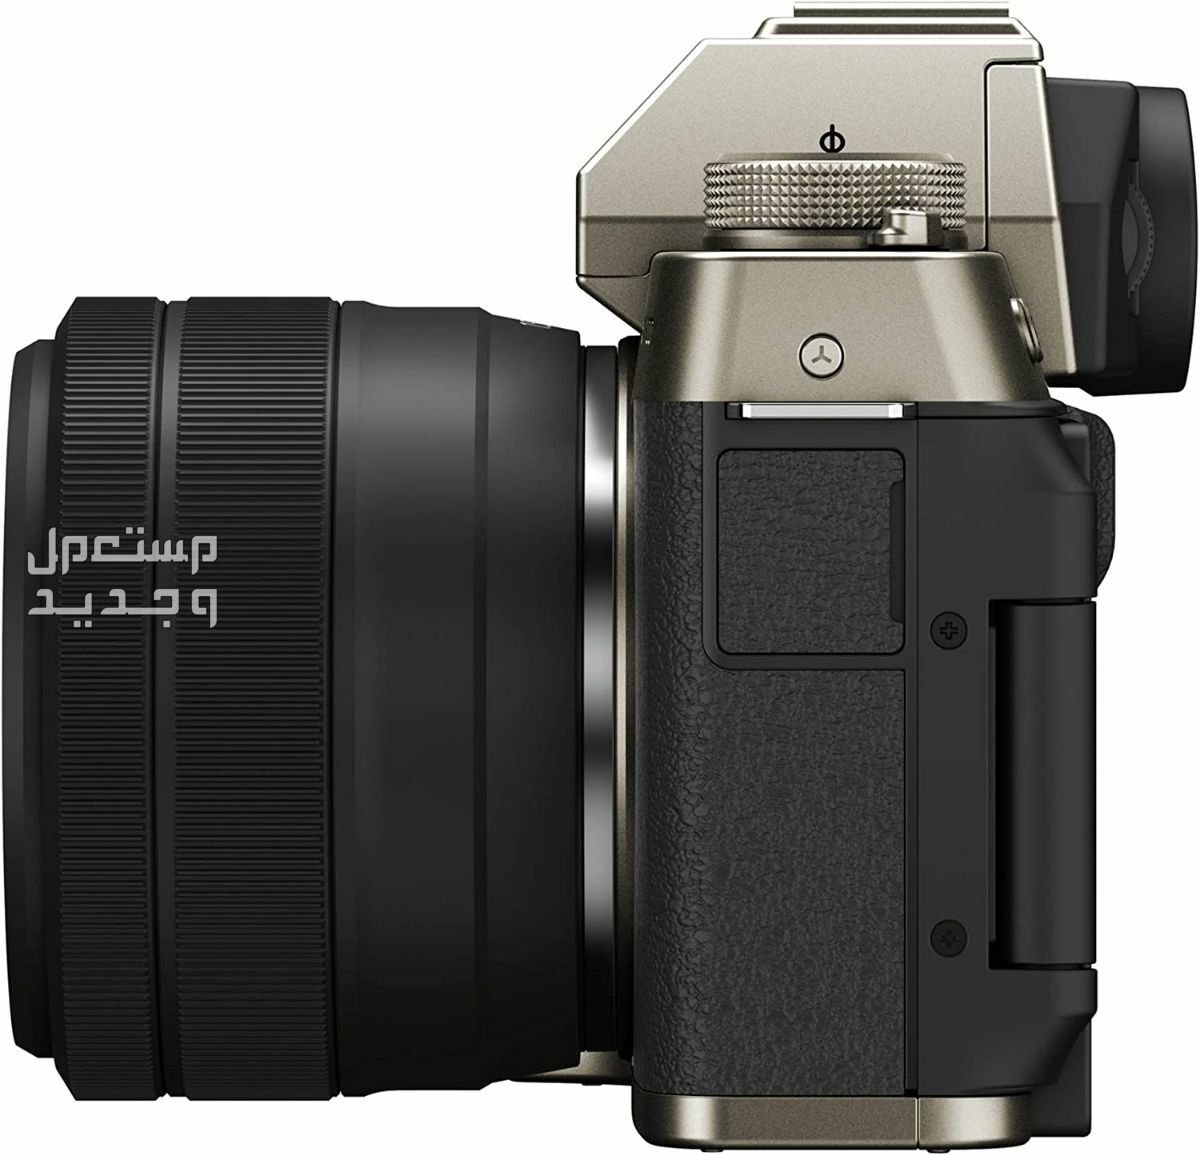 10 كاميرات تصوير ماركات عالمية بأسعار رخيصة في السودان سعر كاميرا Fujifilm X-T200